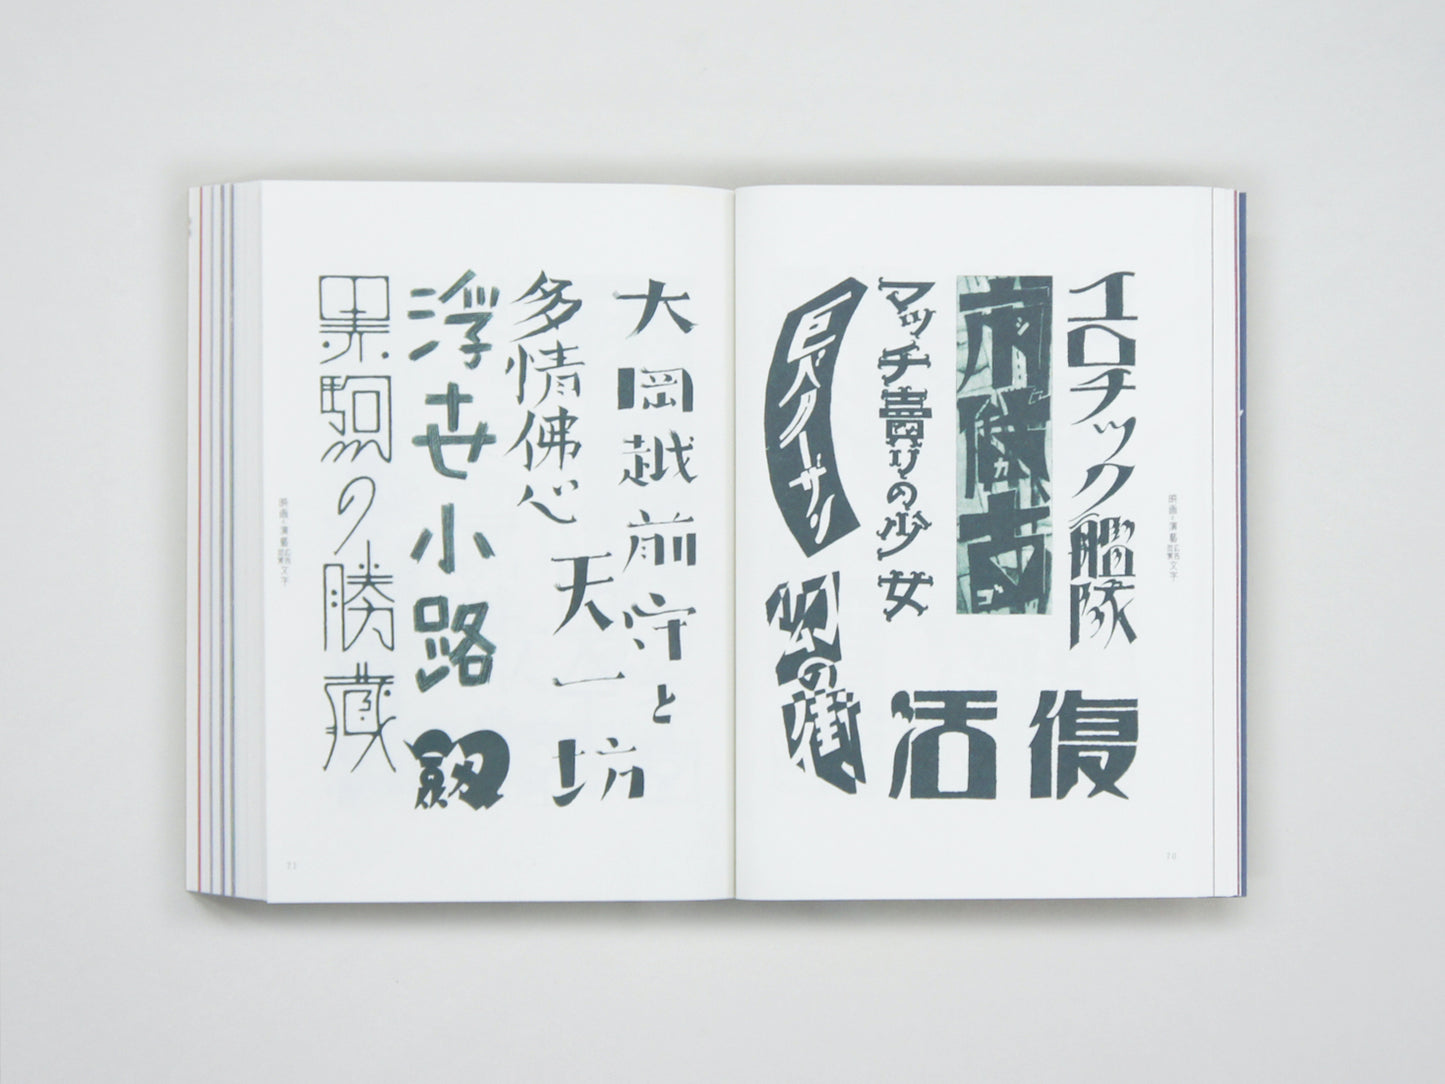 新装復刻版 現代図案文字大集成 New Reprinted Edition : A Compilation of Contemporary Letter Designs